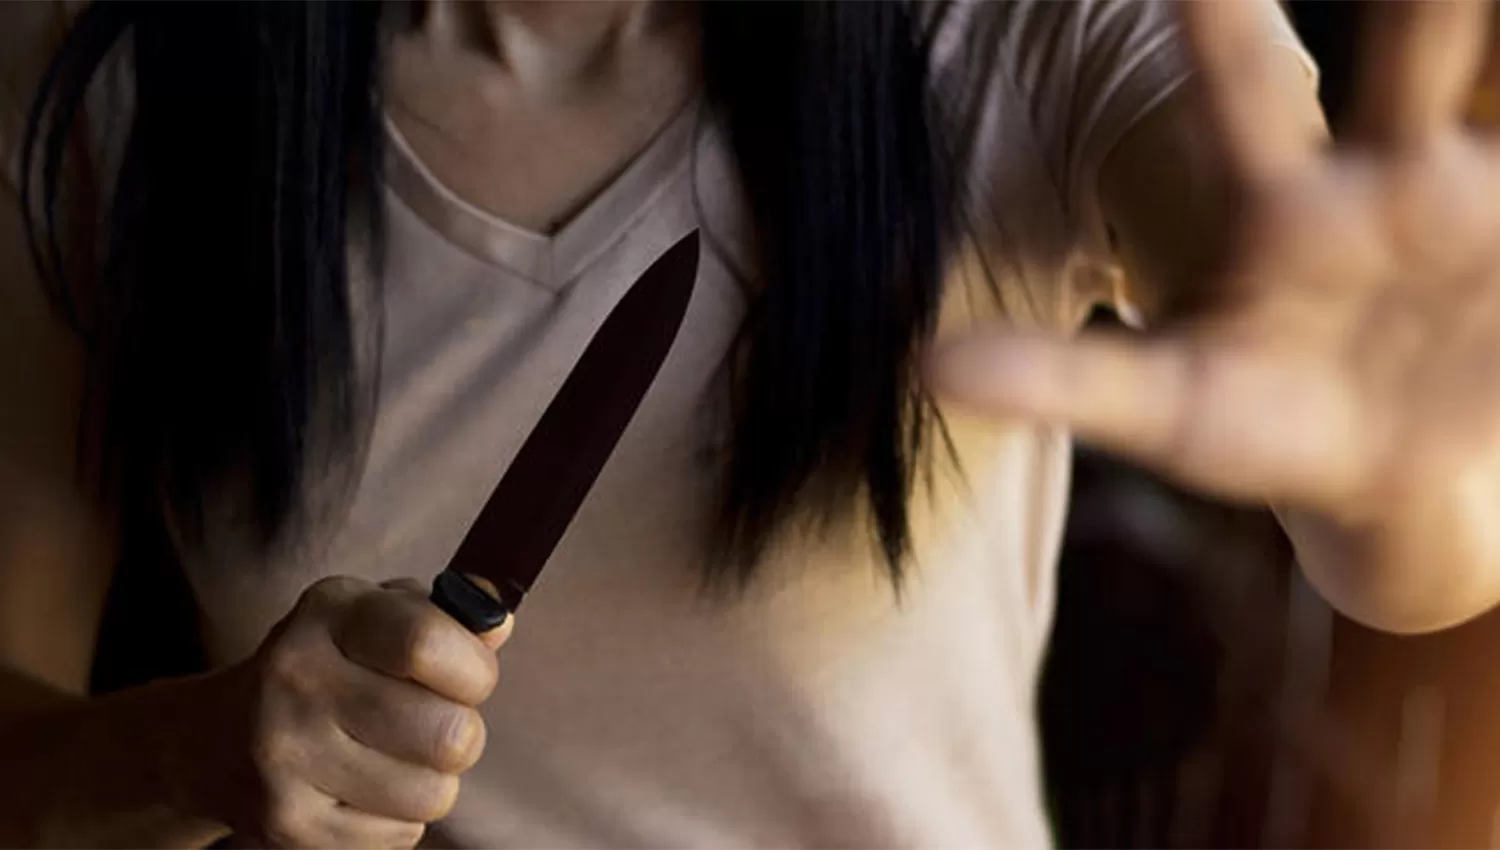 VIOLENCIA. Según el hombre, la mujer tomó un cuchillo de la cocina y lo amenazó. IMAGEN ILUSTRATIVA